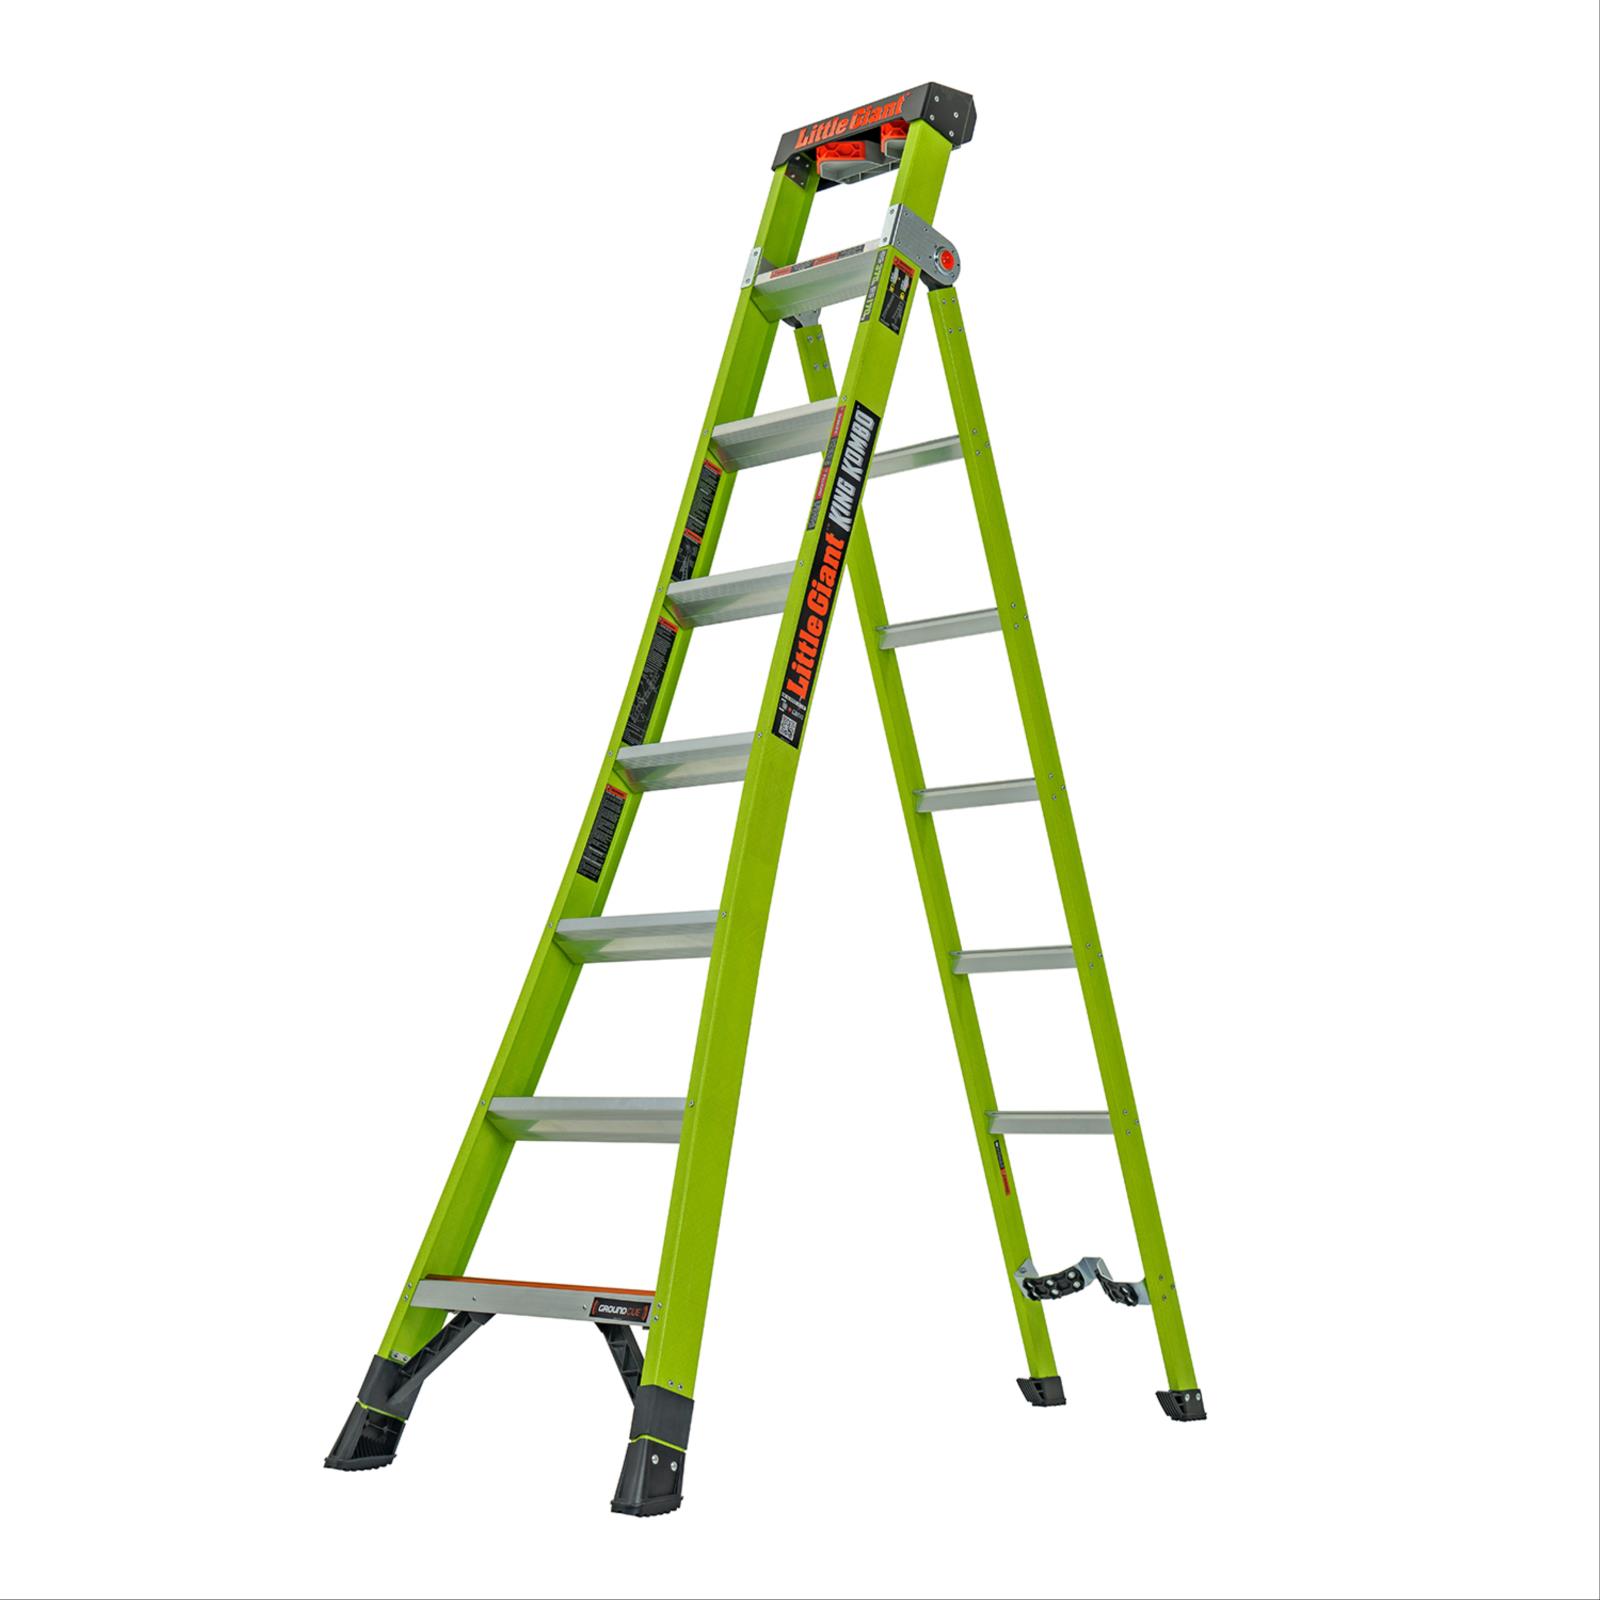 King Kombo™ Fiberglass Ladders